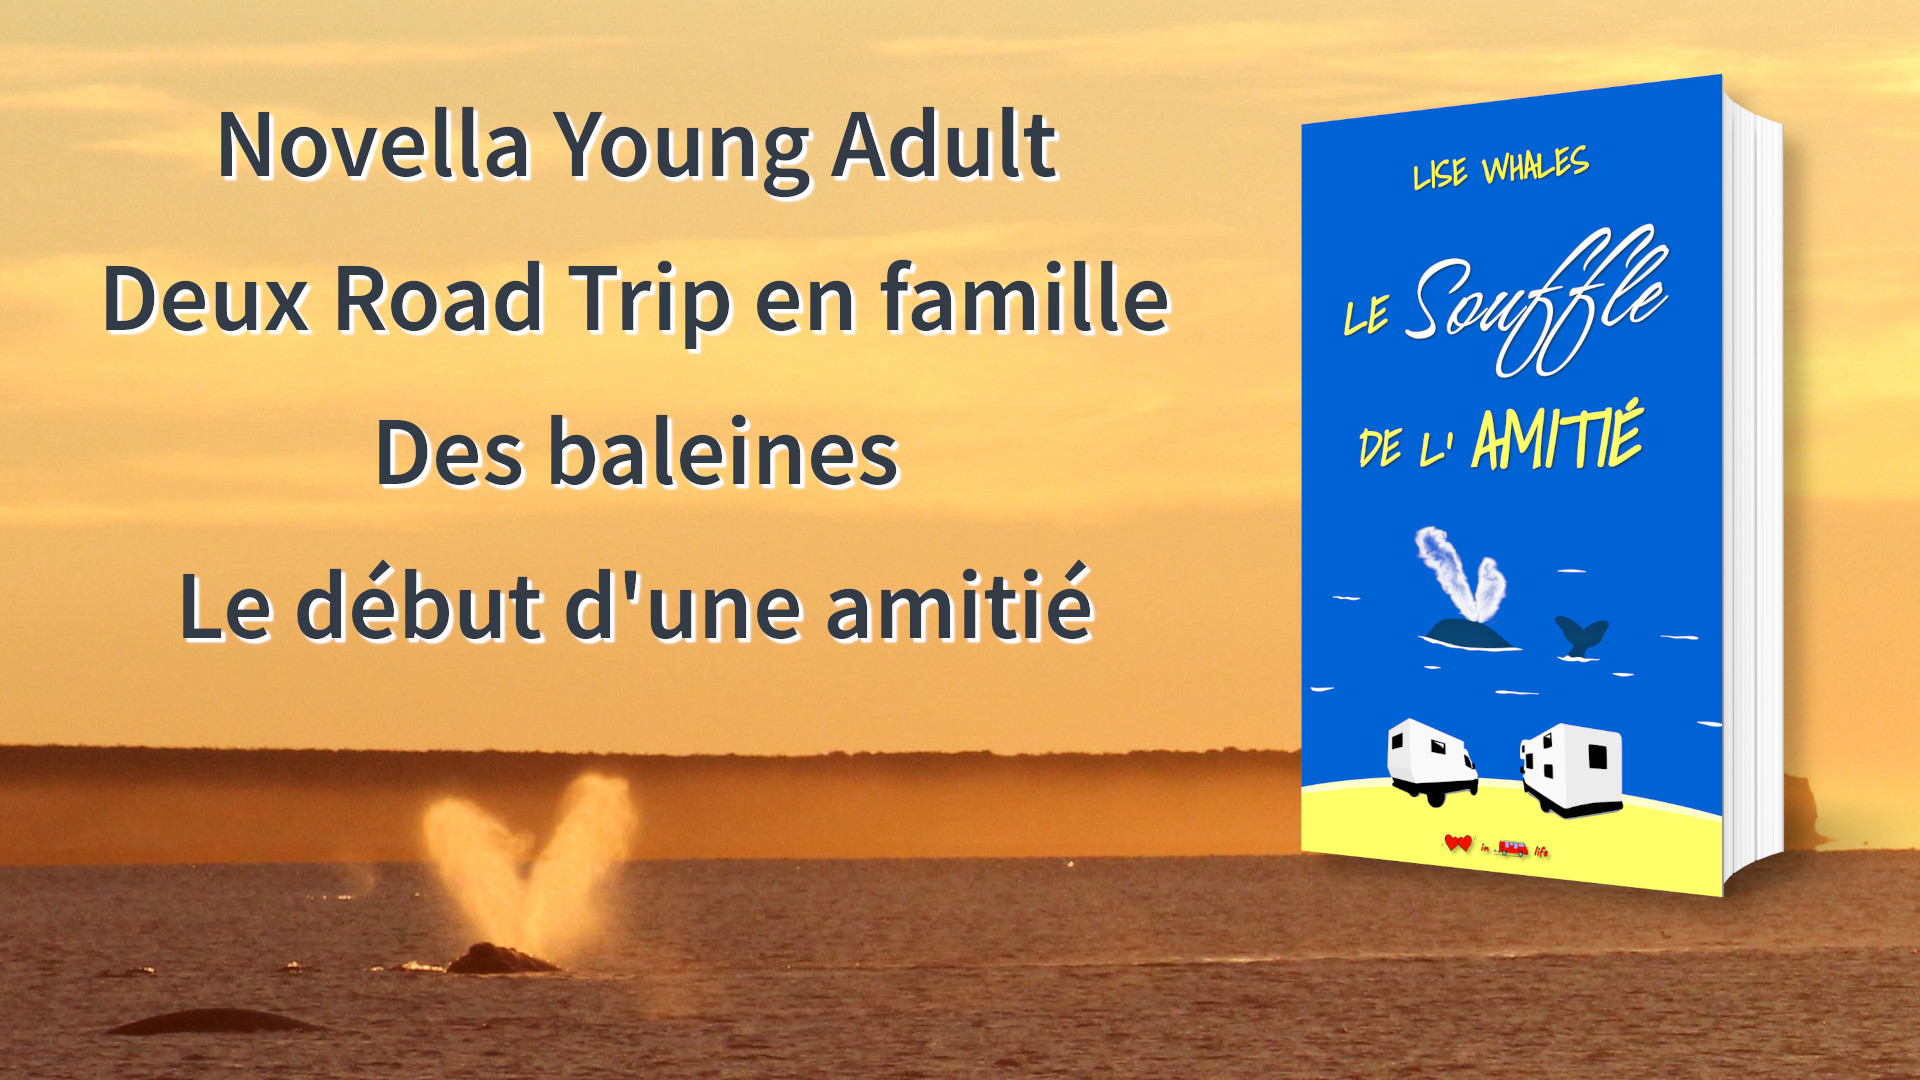 Le Souffle de l'Amitié - Novella Young Adult, deux road trip en famille, des baleines, une amitié